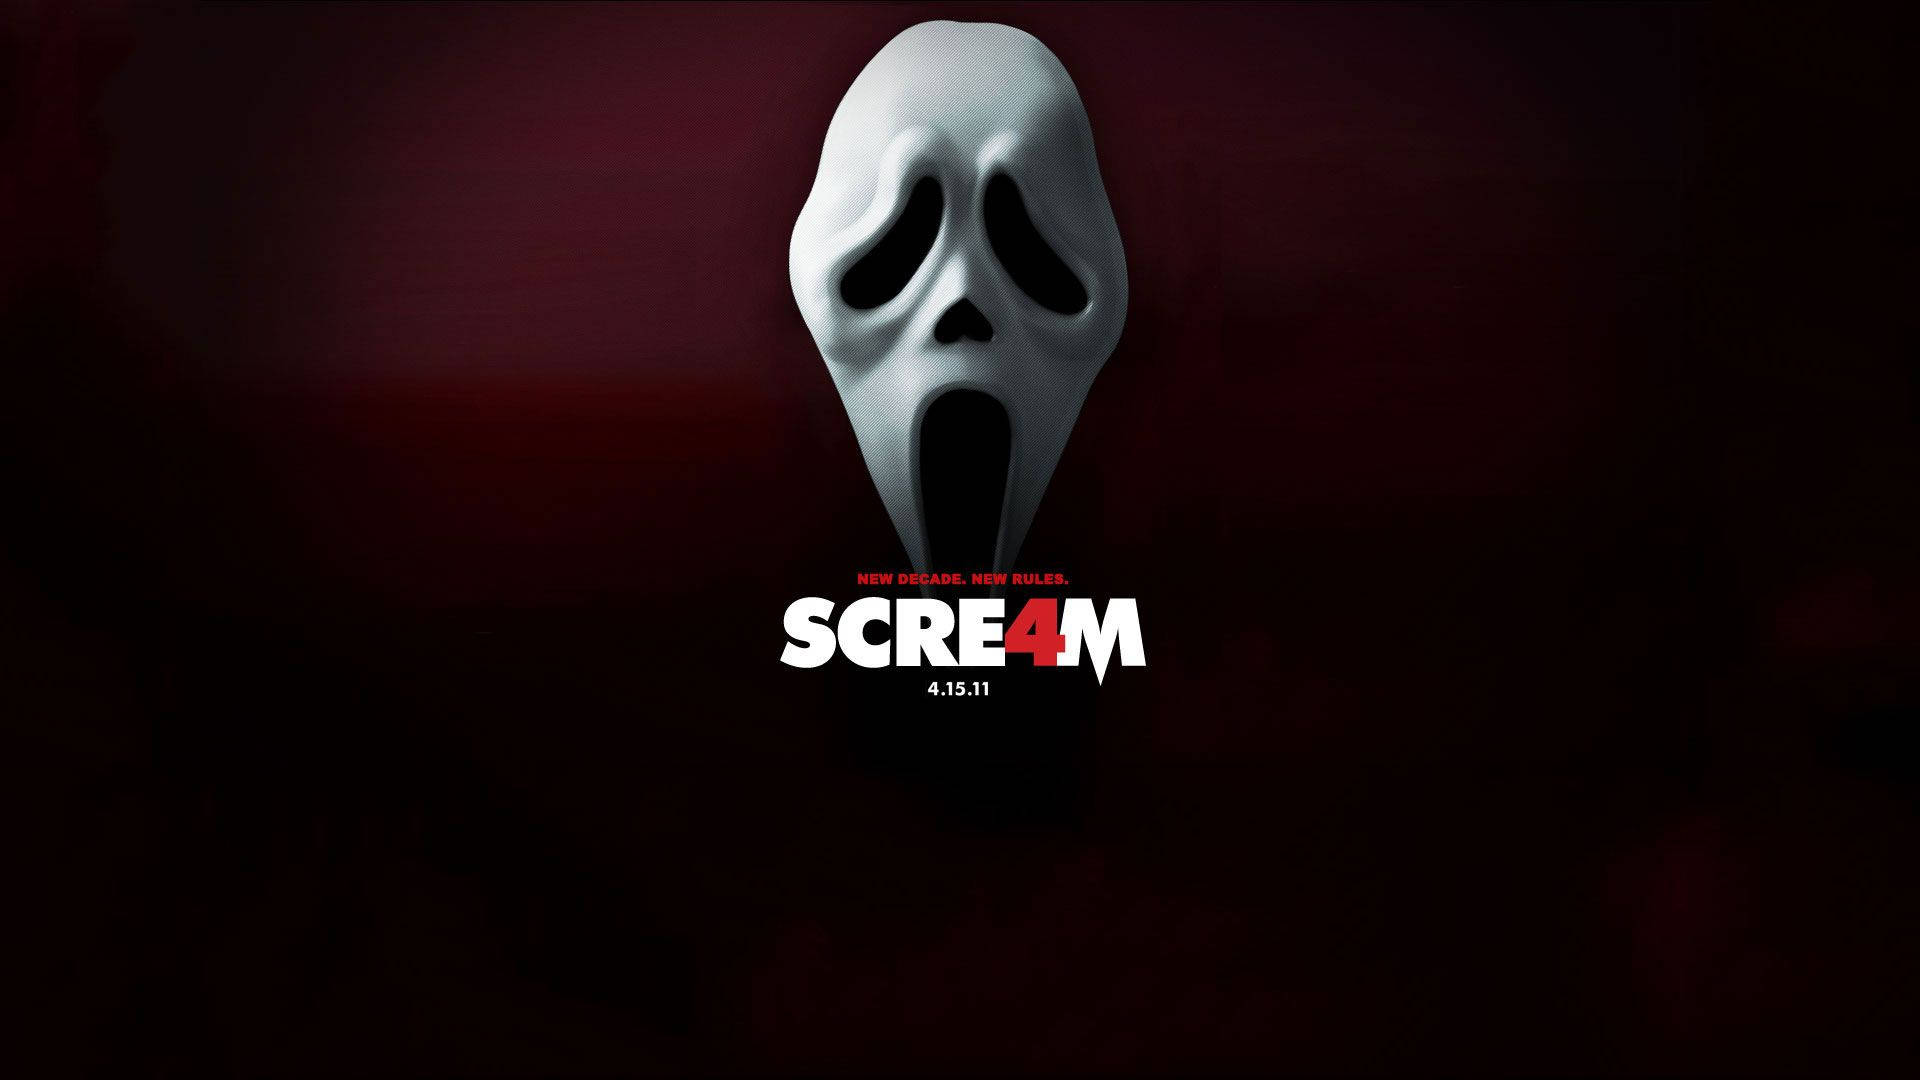 Scream 4 Movie Poster Background